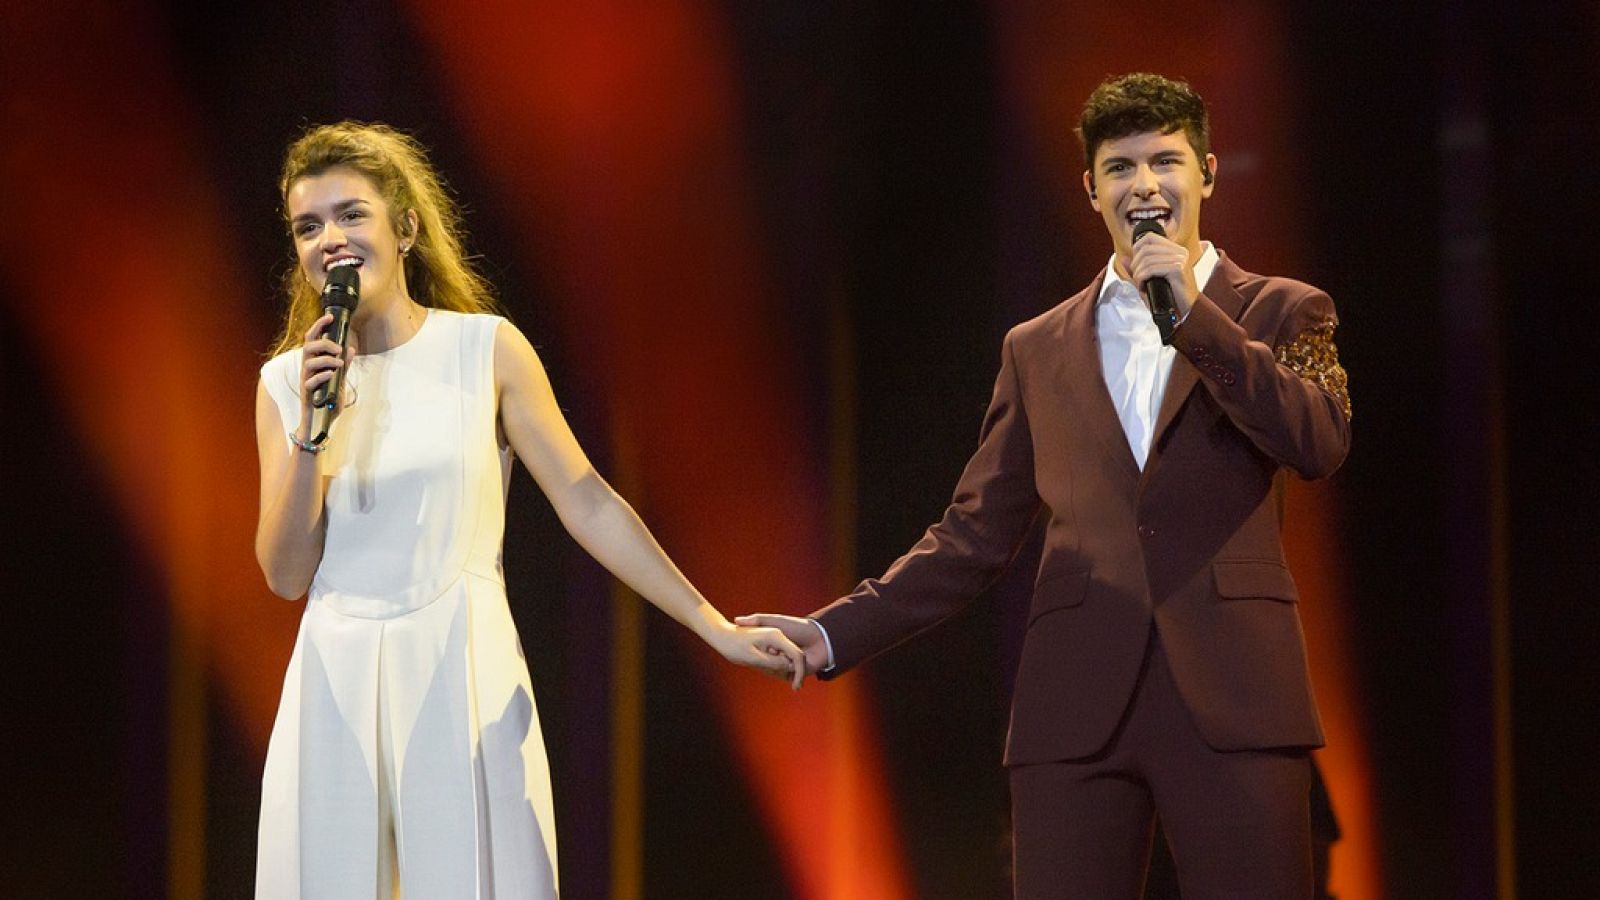 España directo - Una puesta en escena "elegante y sencilla" para Eurovisión 2018